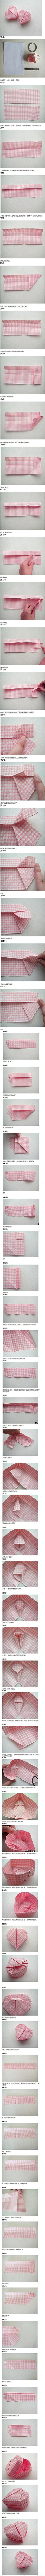 【折纸教程】心型纸盒